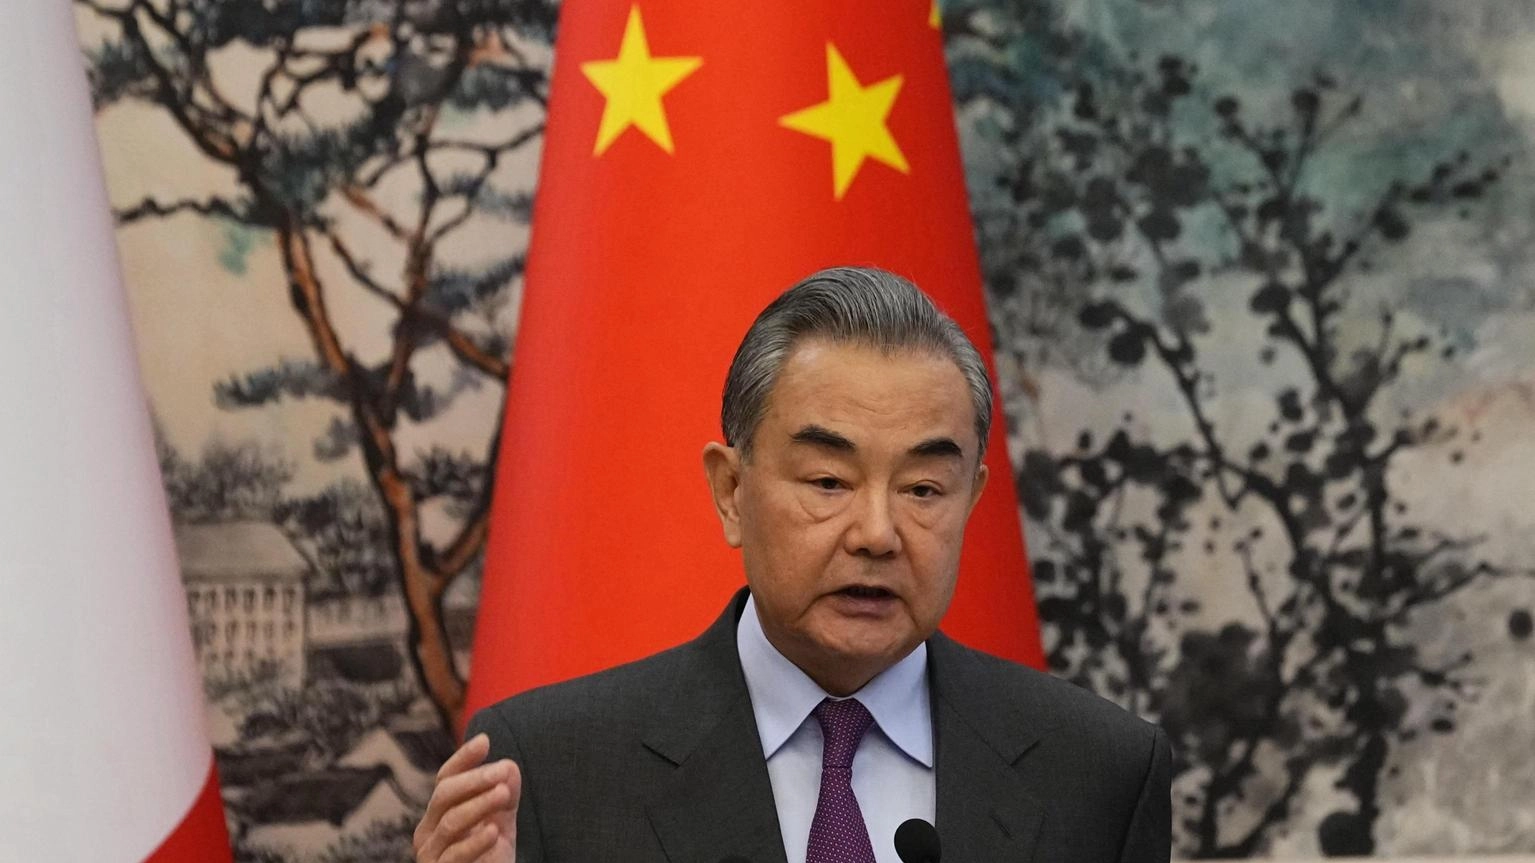 Cina, Pechino e Mosca devono difendere equità e giustizia